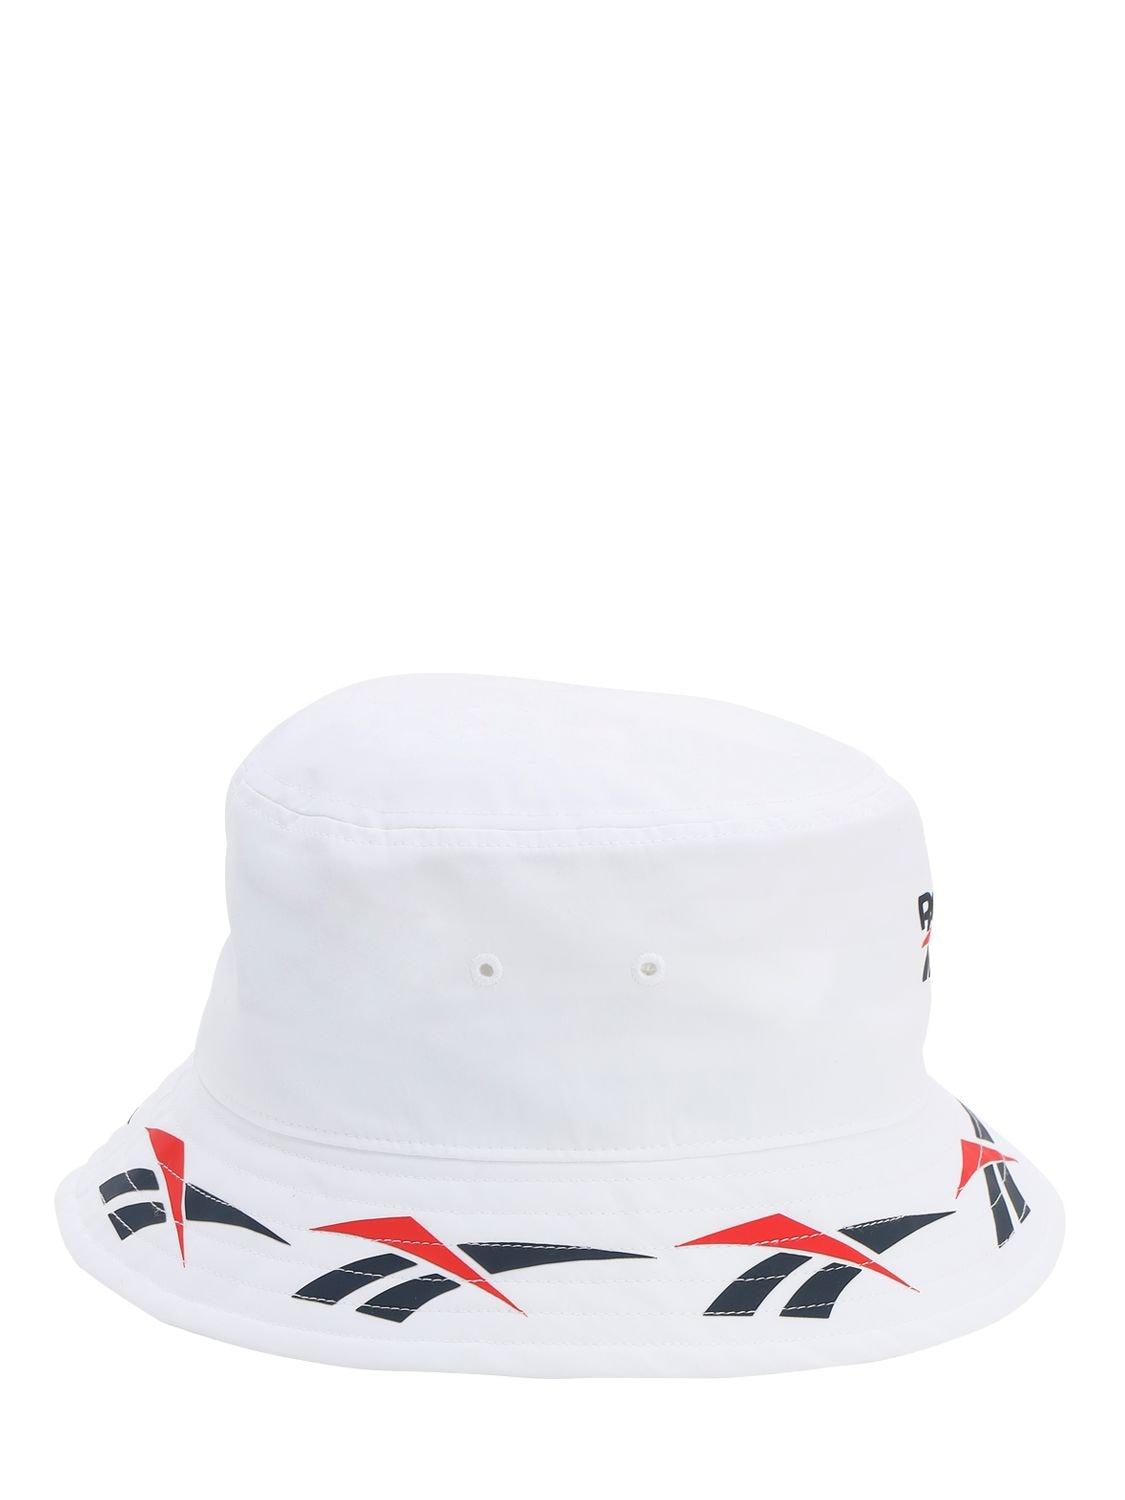 Reebok Cl Vector Bucket Hat in White - Lyst